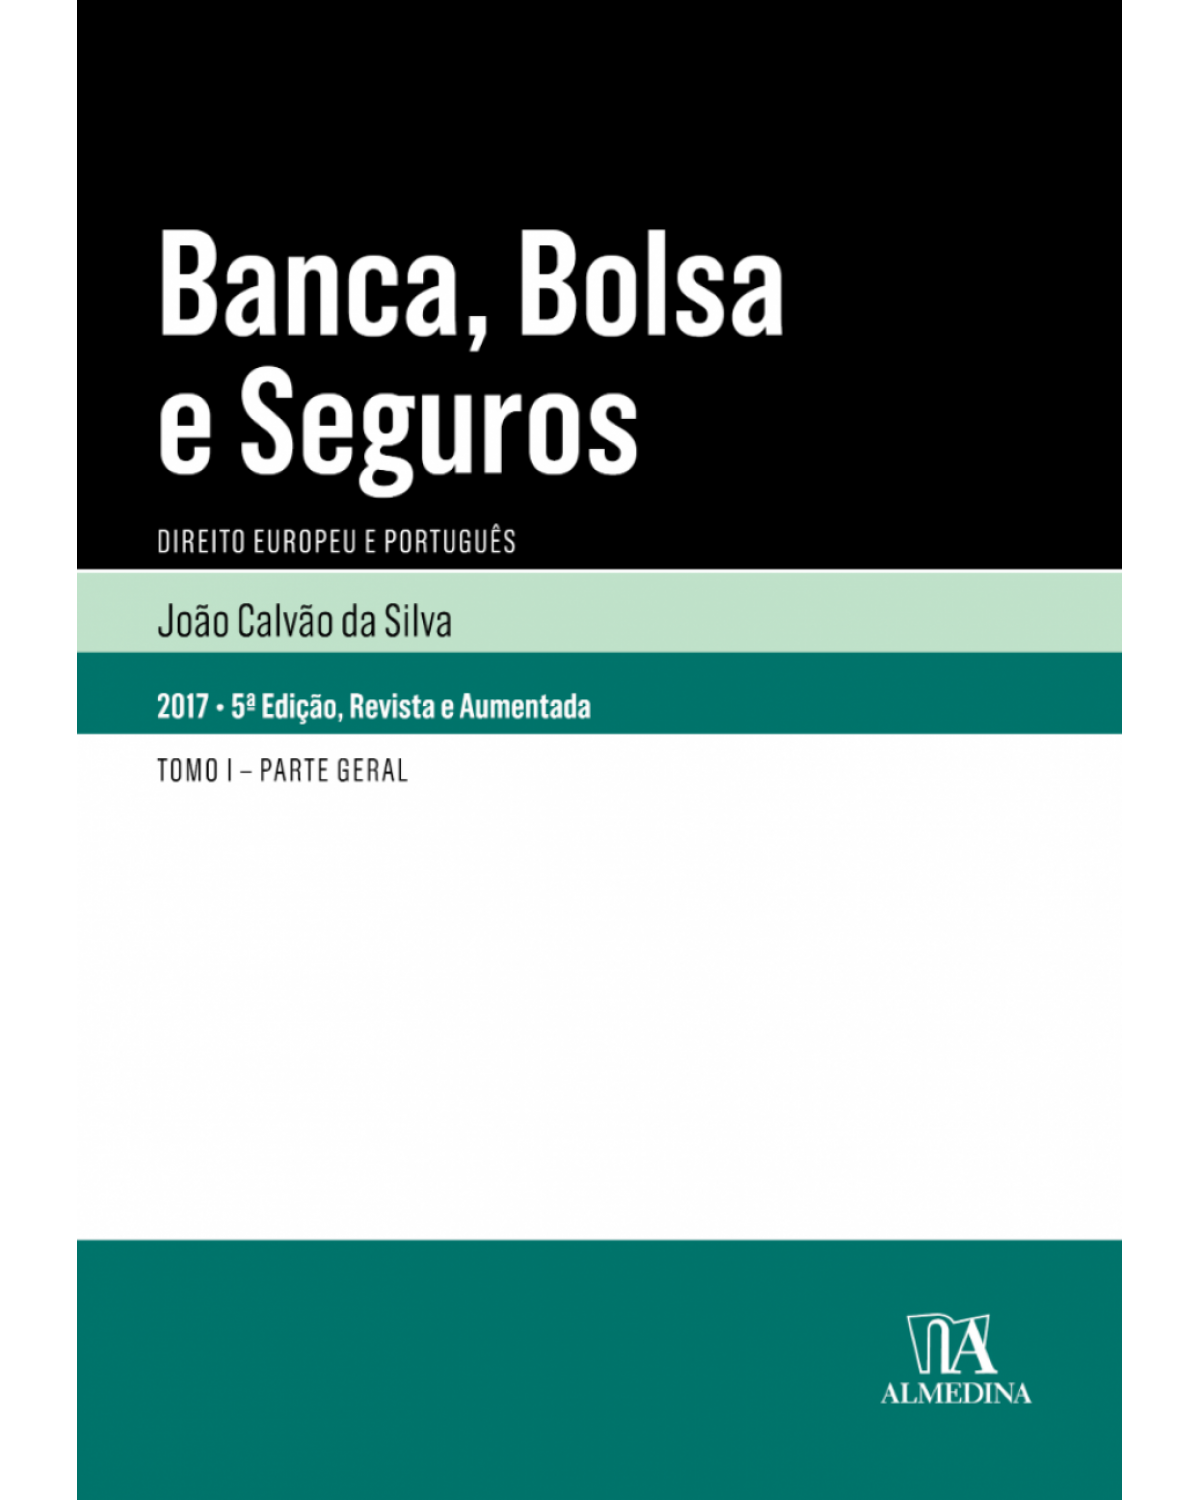 Banca, bolsa e seguros - direito europeu e português - Tomo I - Parte geral - 5ª Edição | 2017